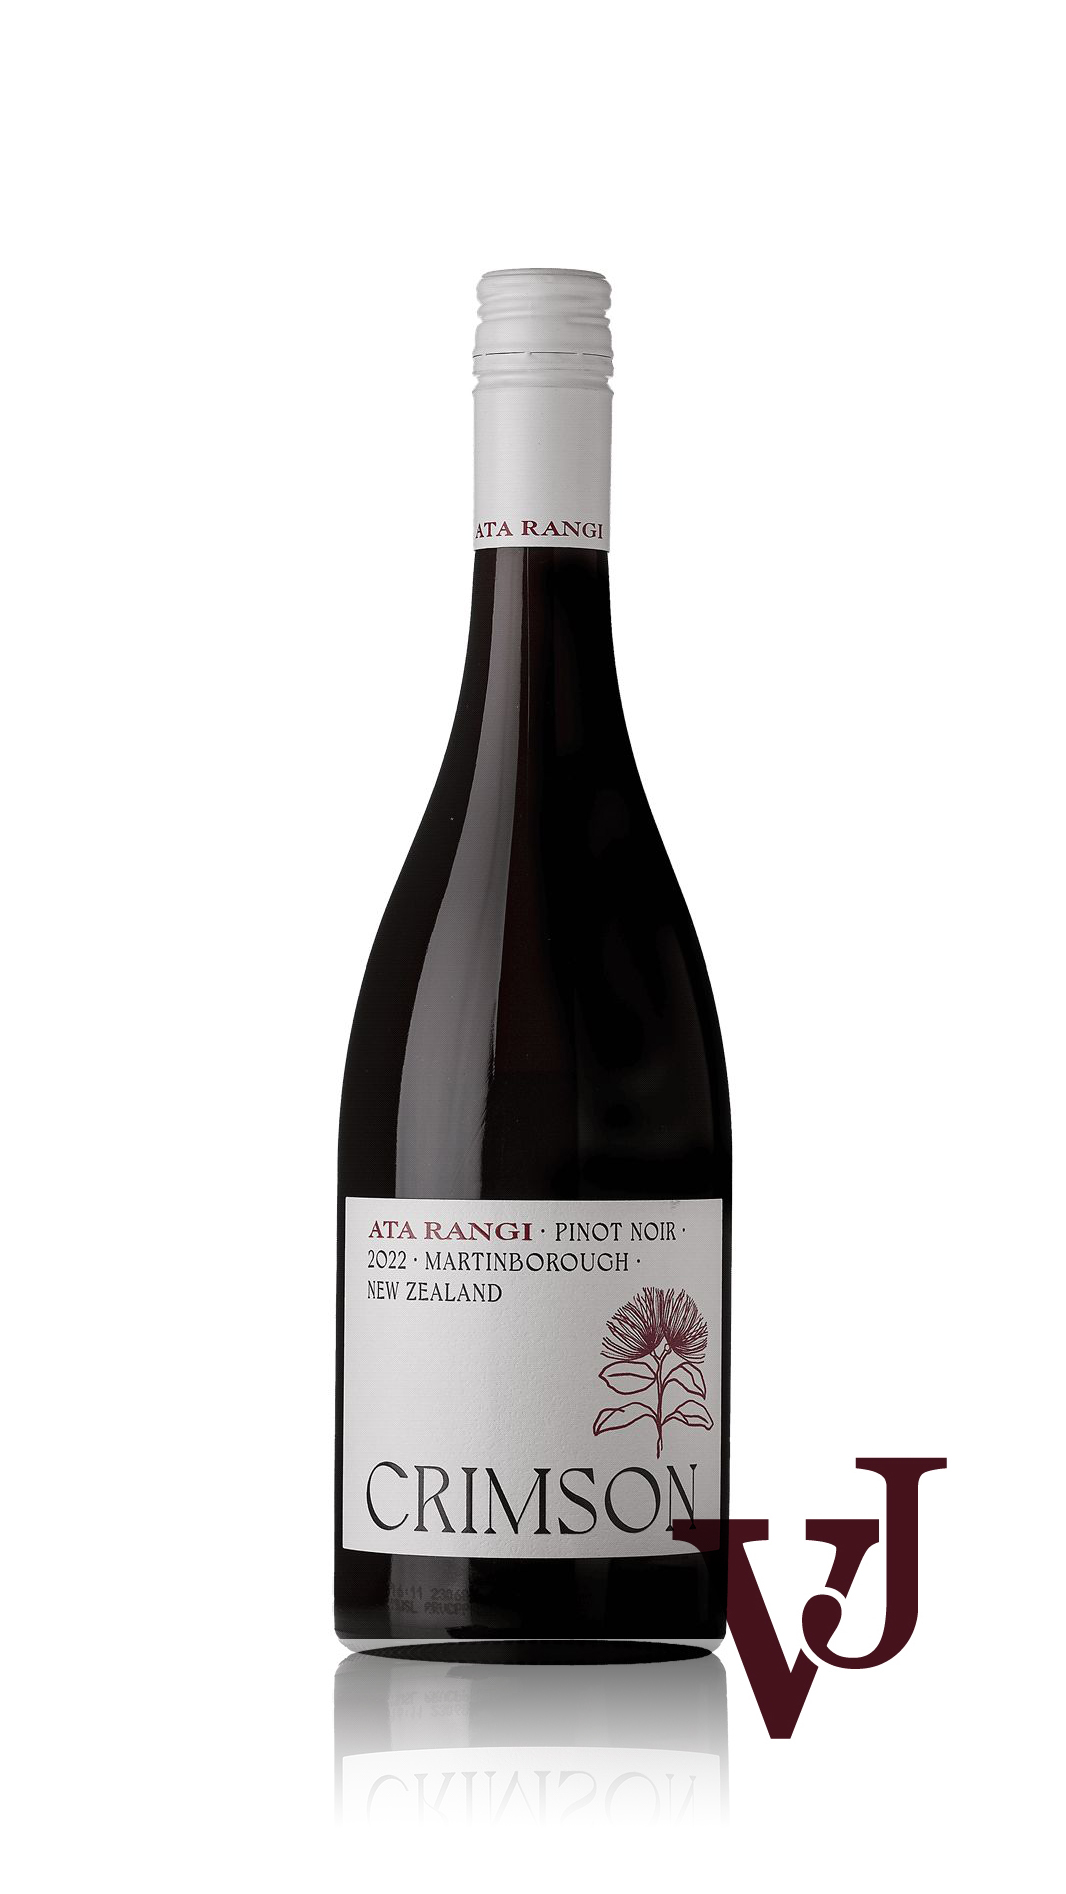 Rött Vin - Ata Rangi Crimson Pinot Noir 2022 artikel nummer 9445101 från producenten Ata Rangi från området Nya Zeeland